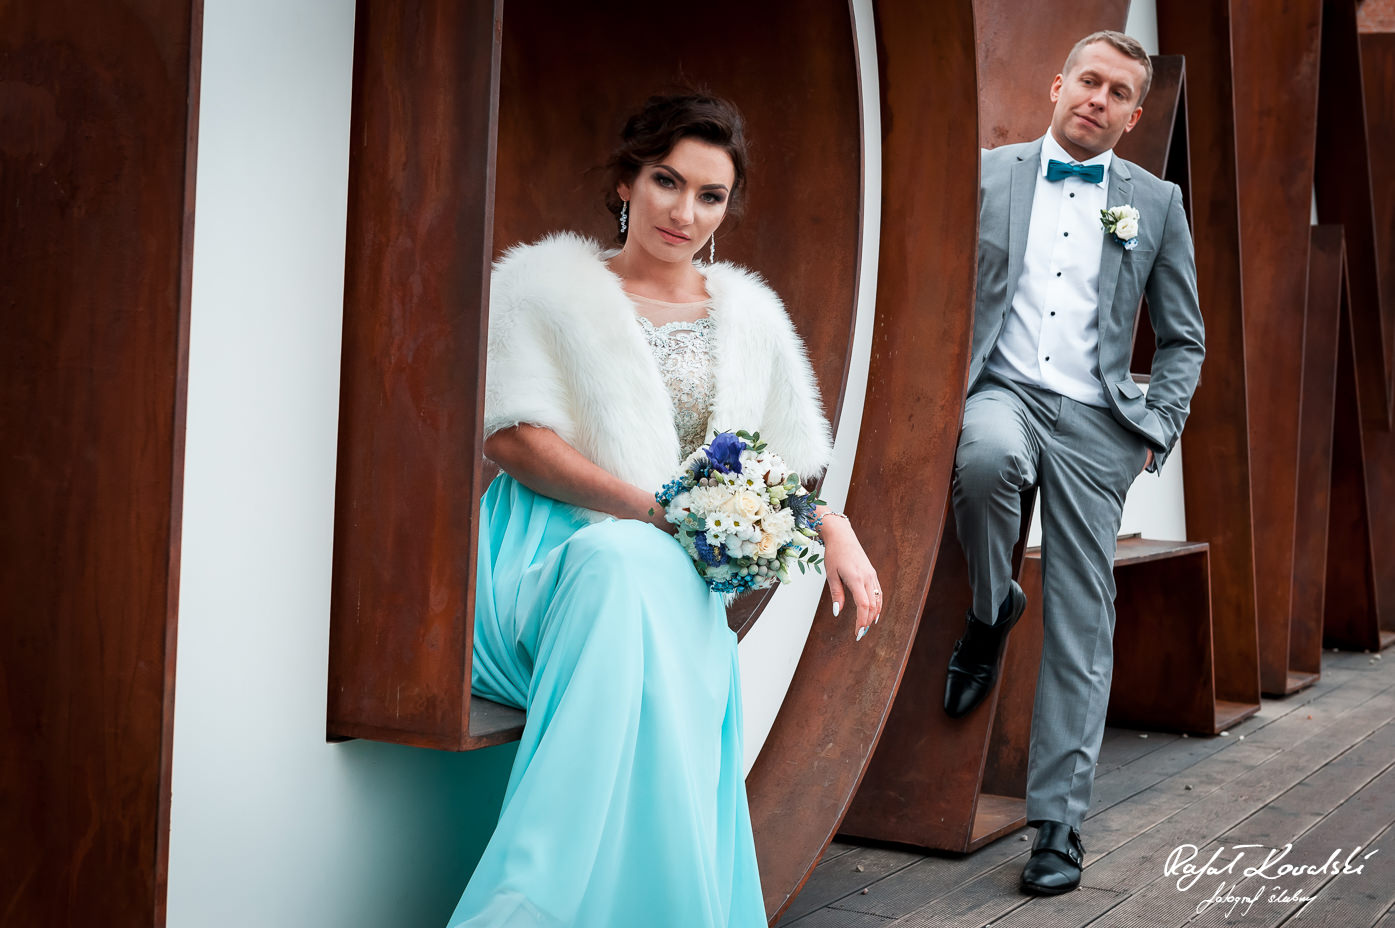 stonowana kolorystyka zdjęć ślubnych doskonale pasuje do zimowego Pleneru ślubnego w Gdańsku